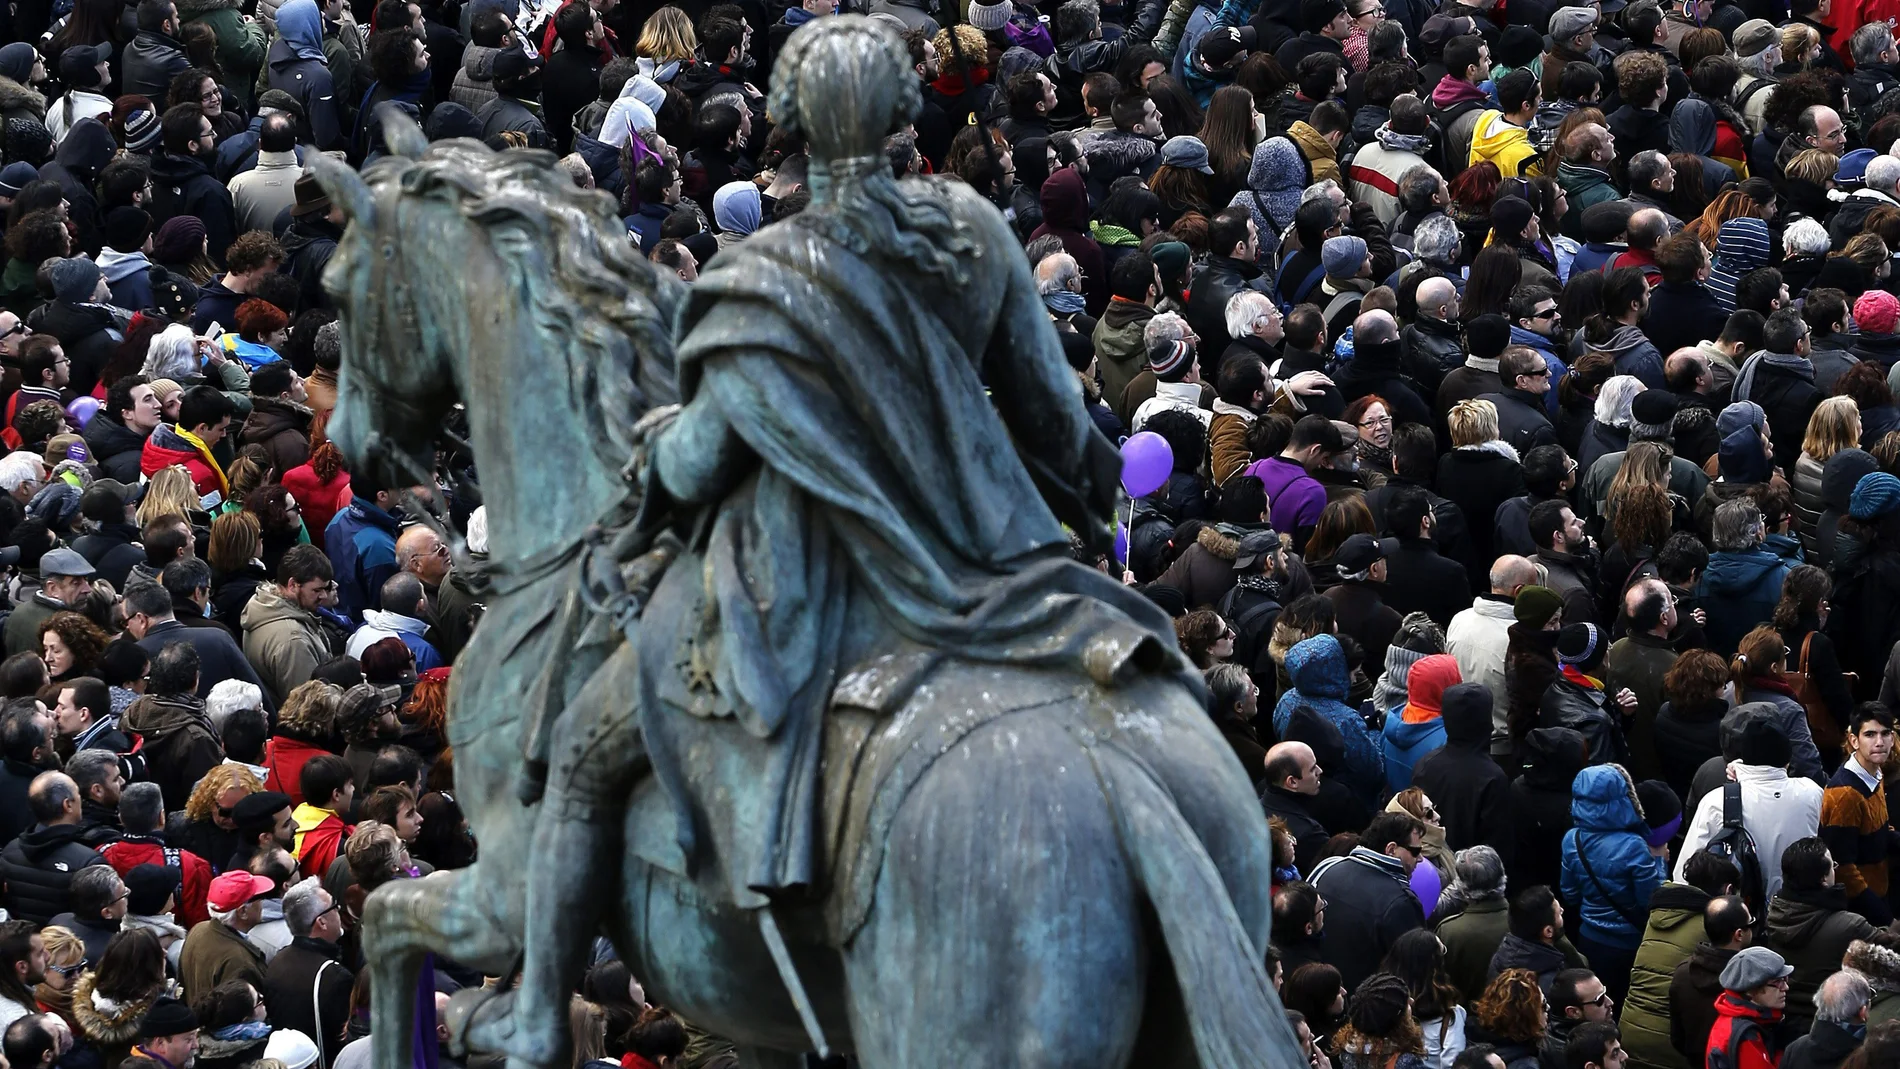 La estatua ecuestre de Carlos III en la Puerta del Sol observa a los miles de personas concentradas